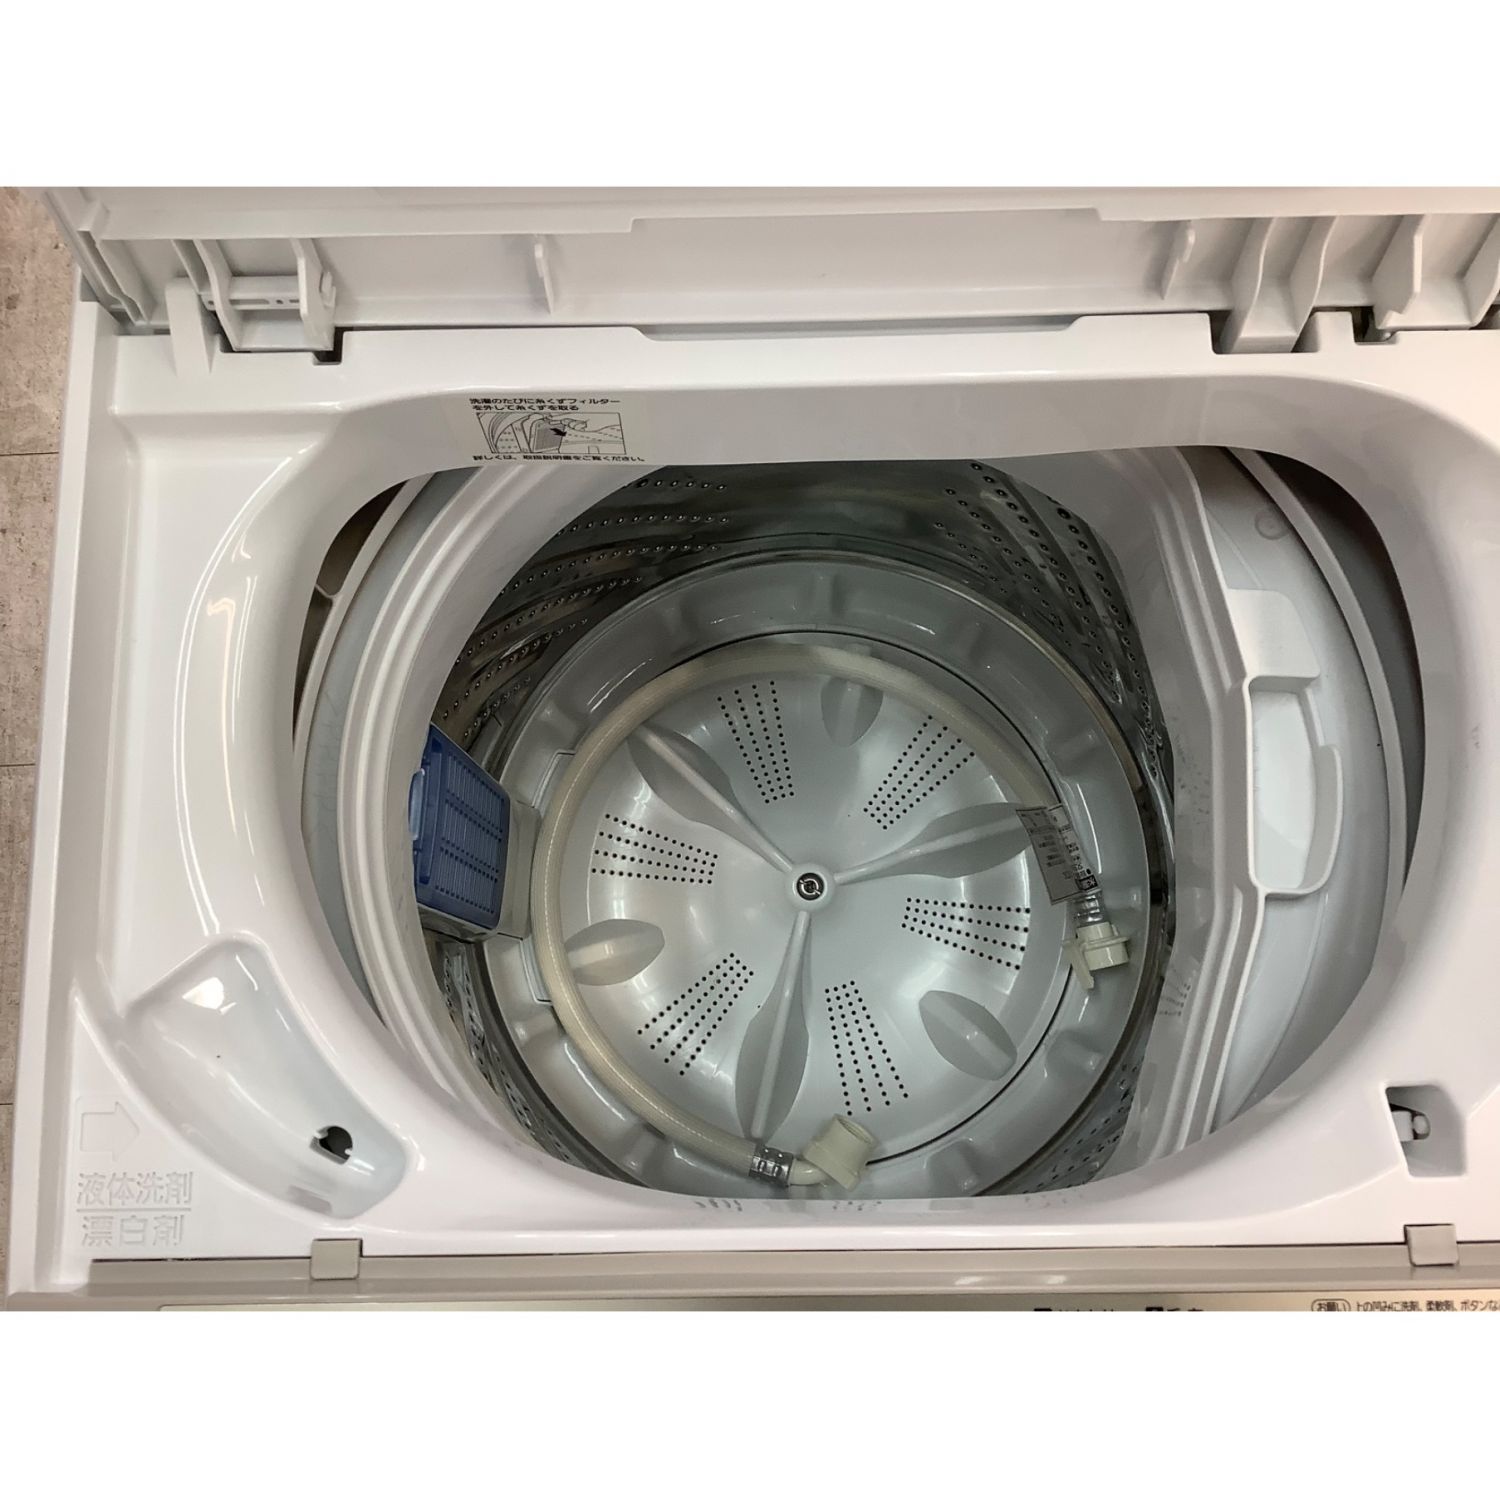 Panasonic (パナソニック) 全自動洗濯機 5.0kg NA-F50B12 2019年製 50Hz／60Hz｜トレファクONLINE